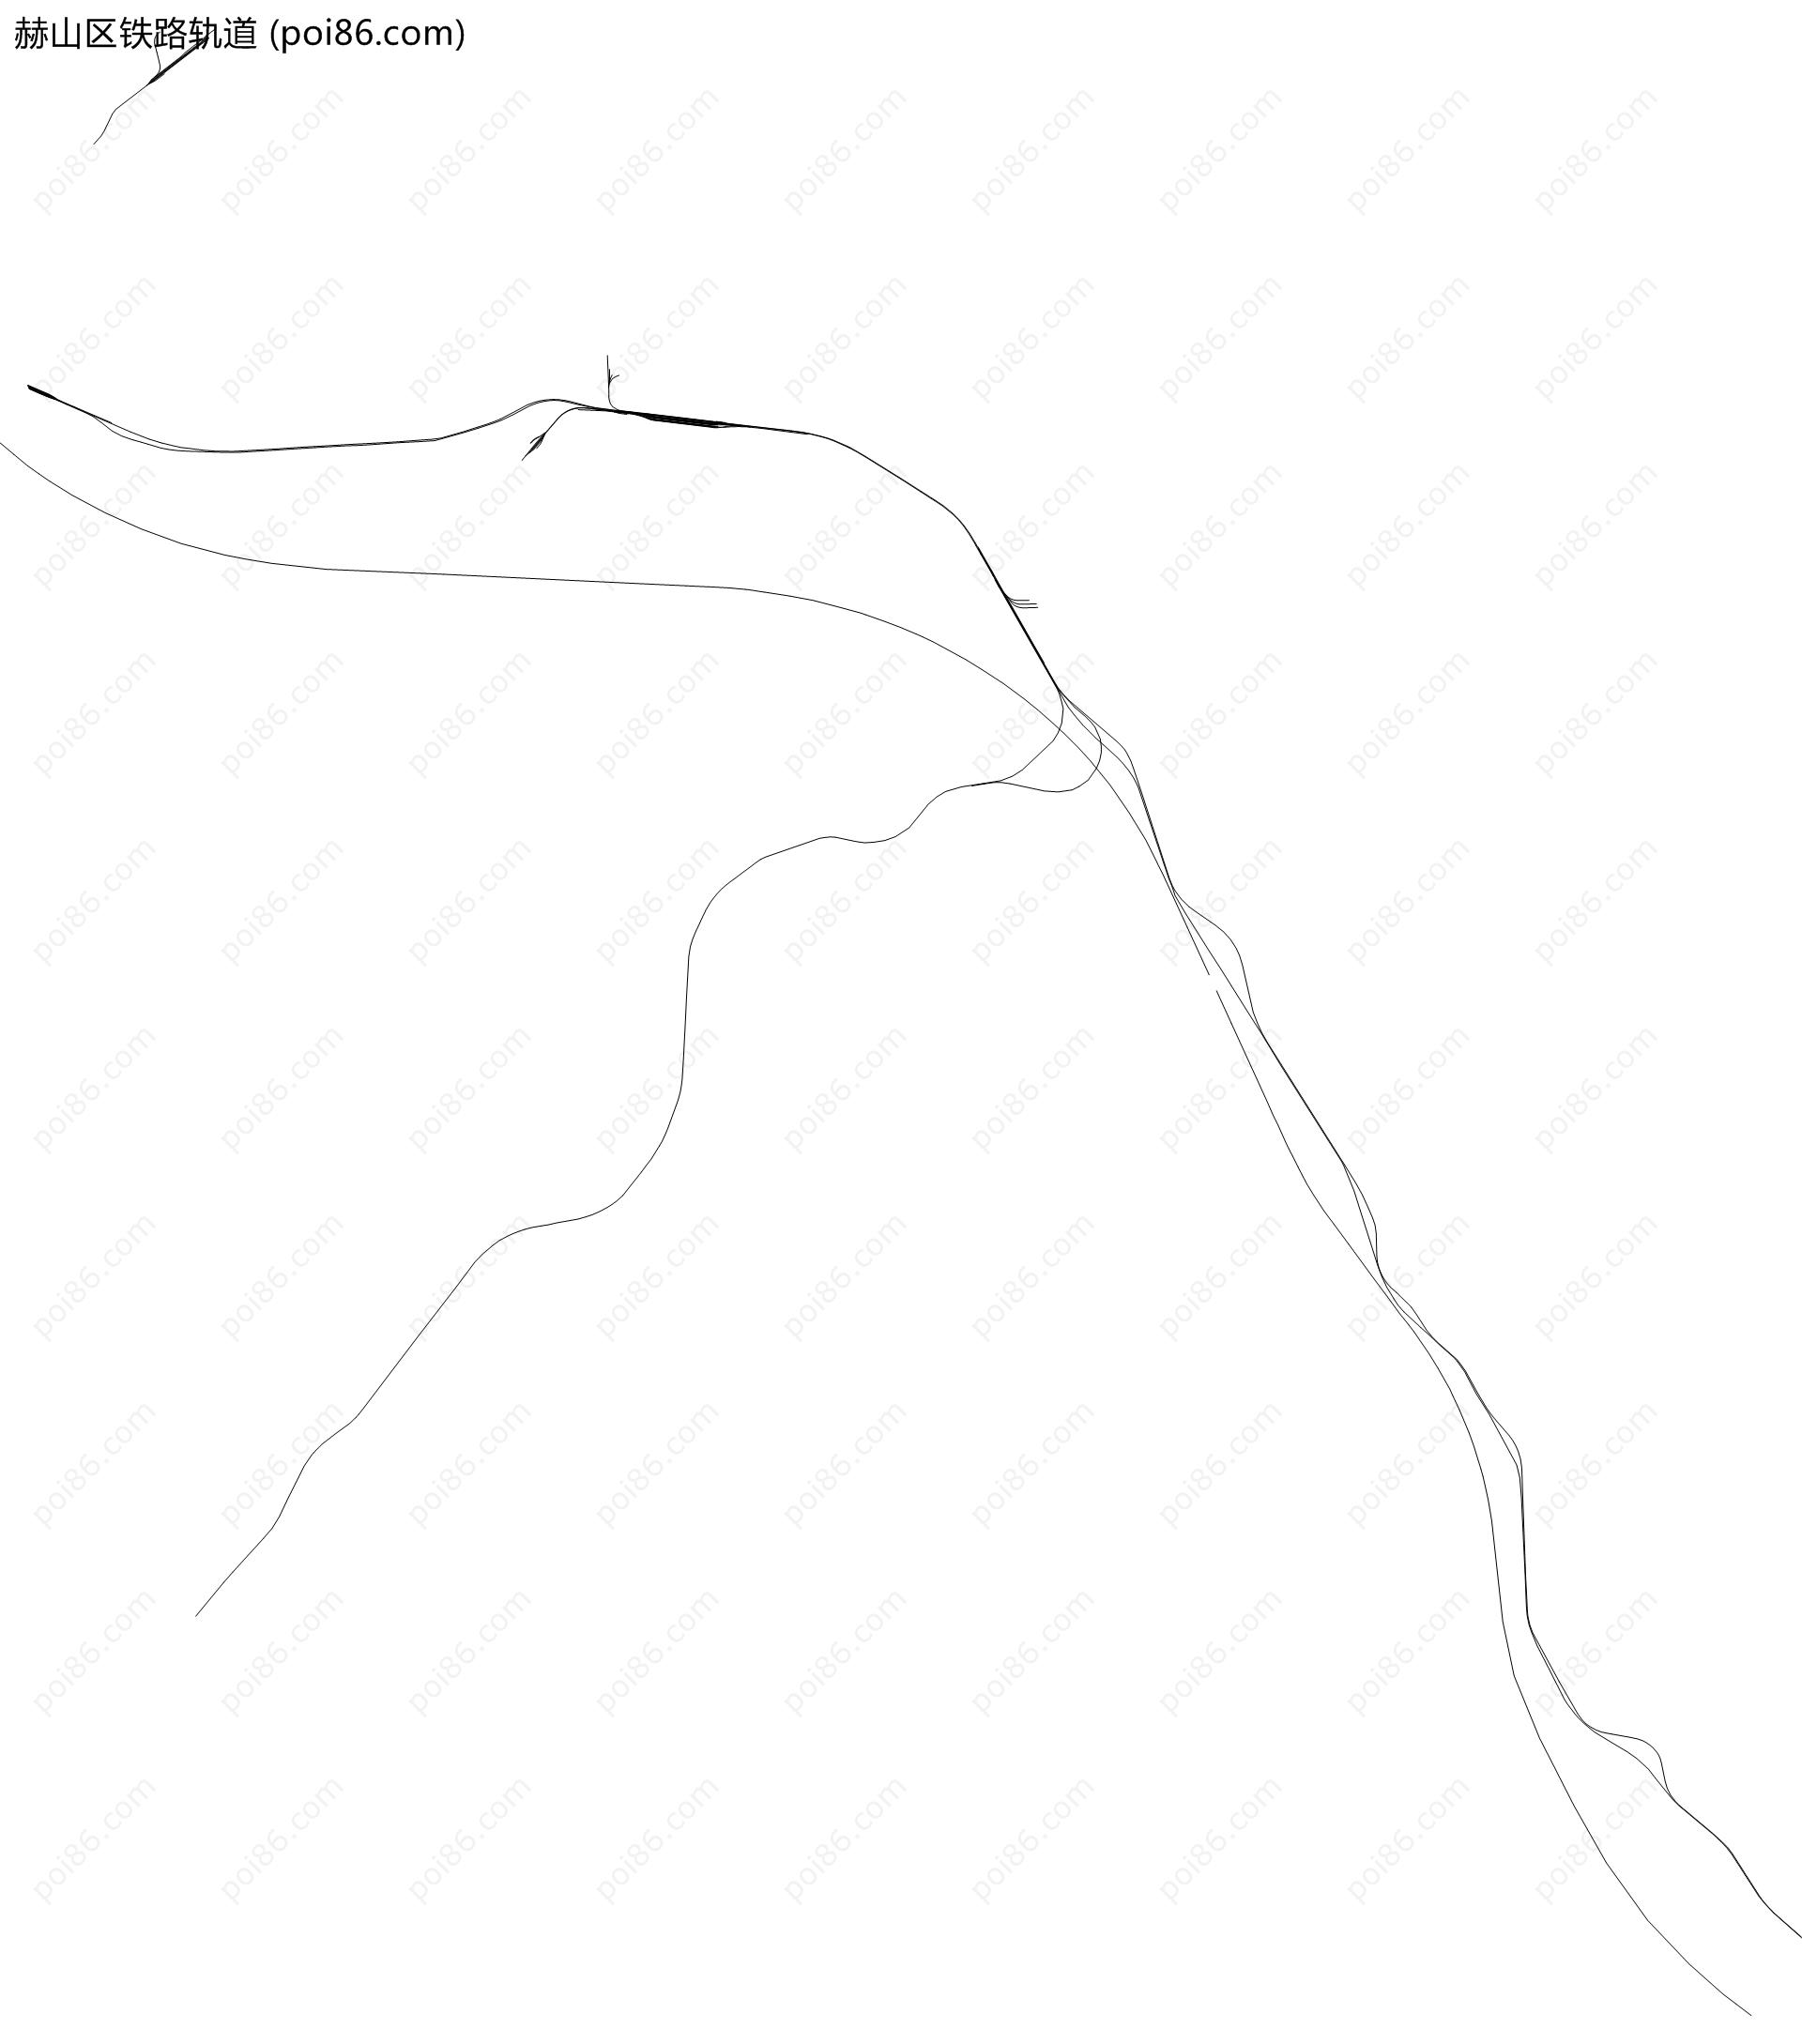 赫山区铁路轨道地图